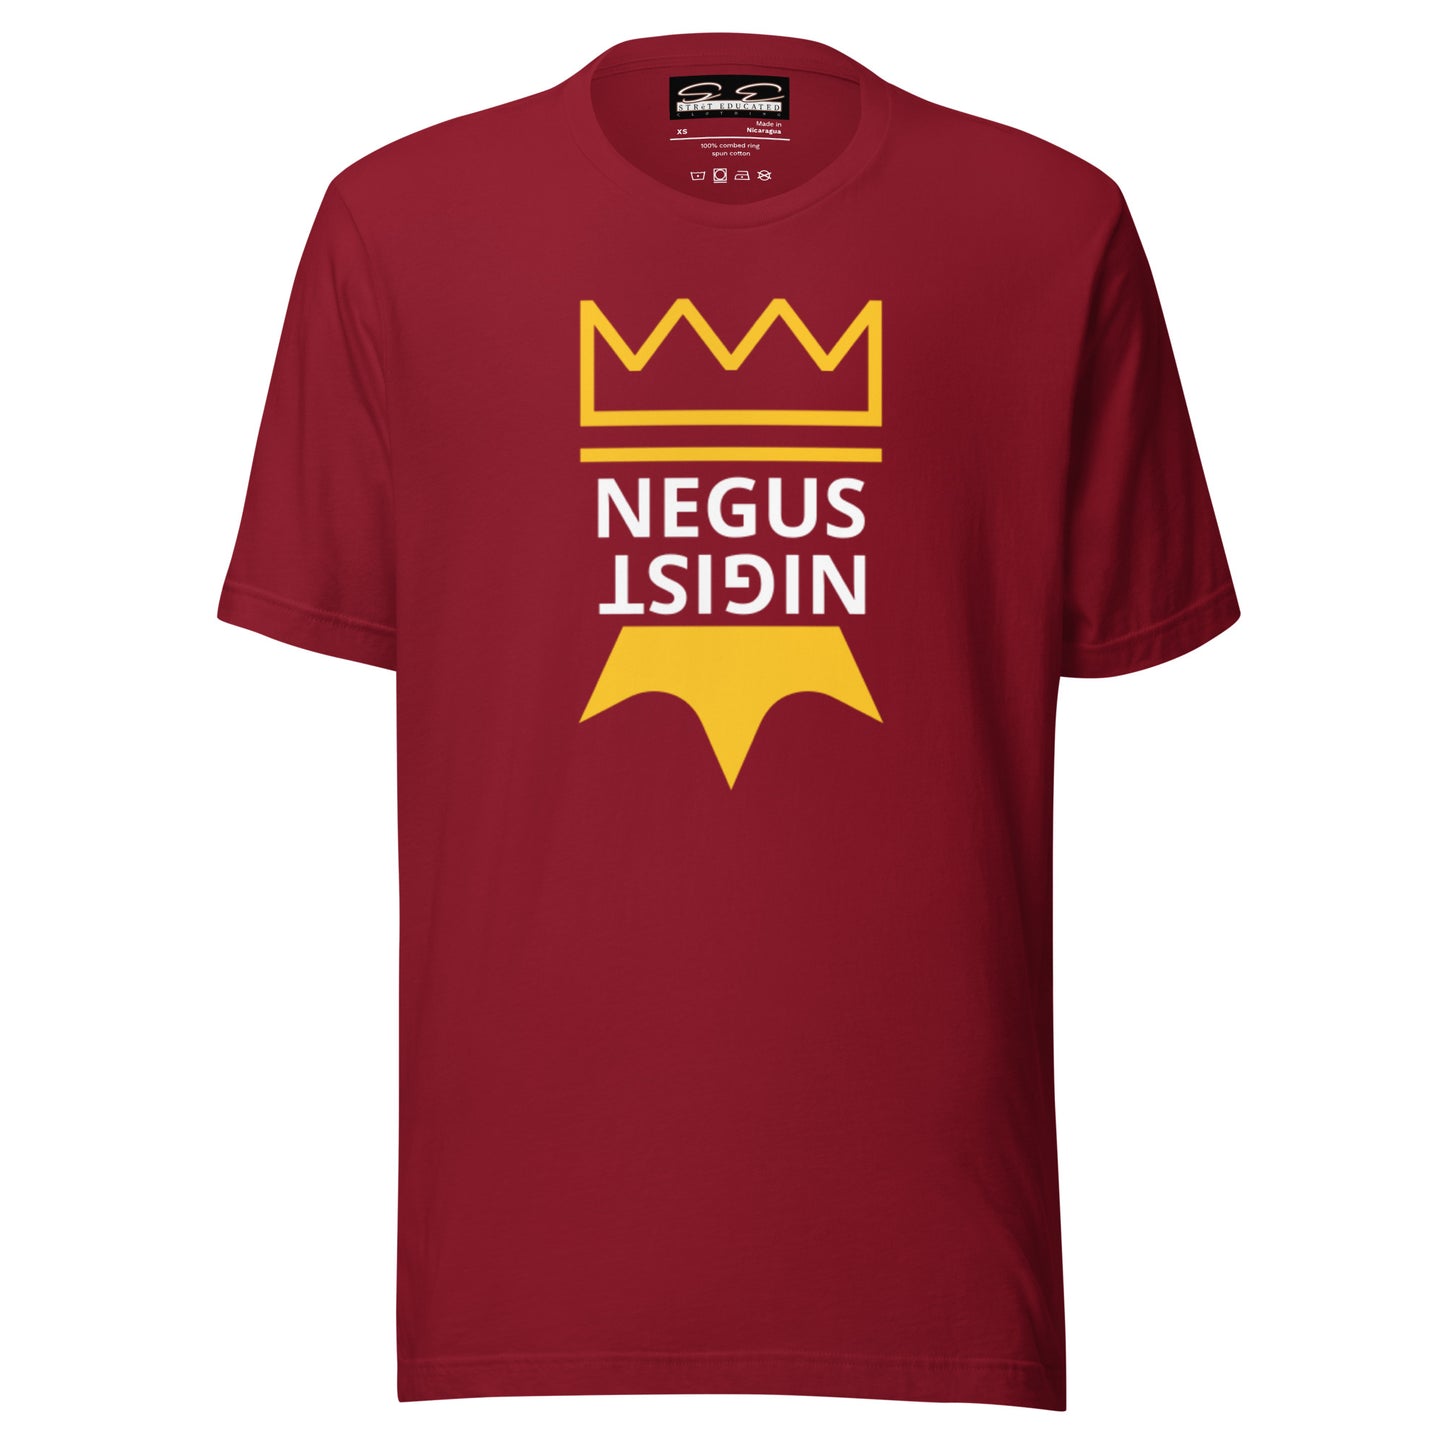 Negus & Nigist t-shirt